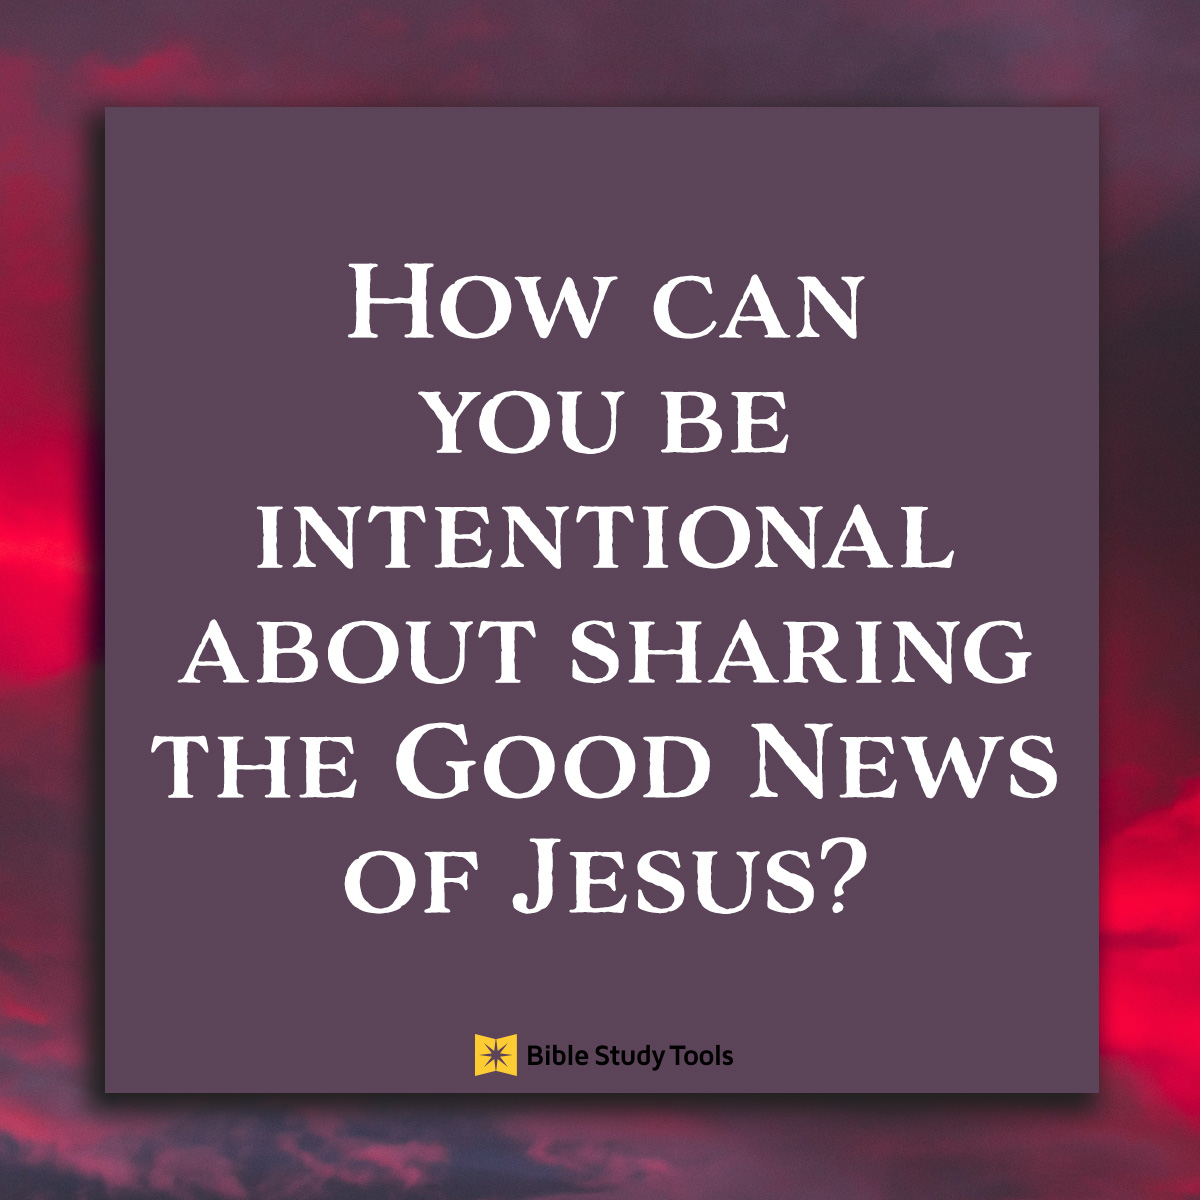 Share the good news, inspirational image